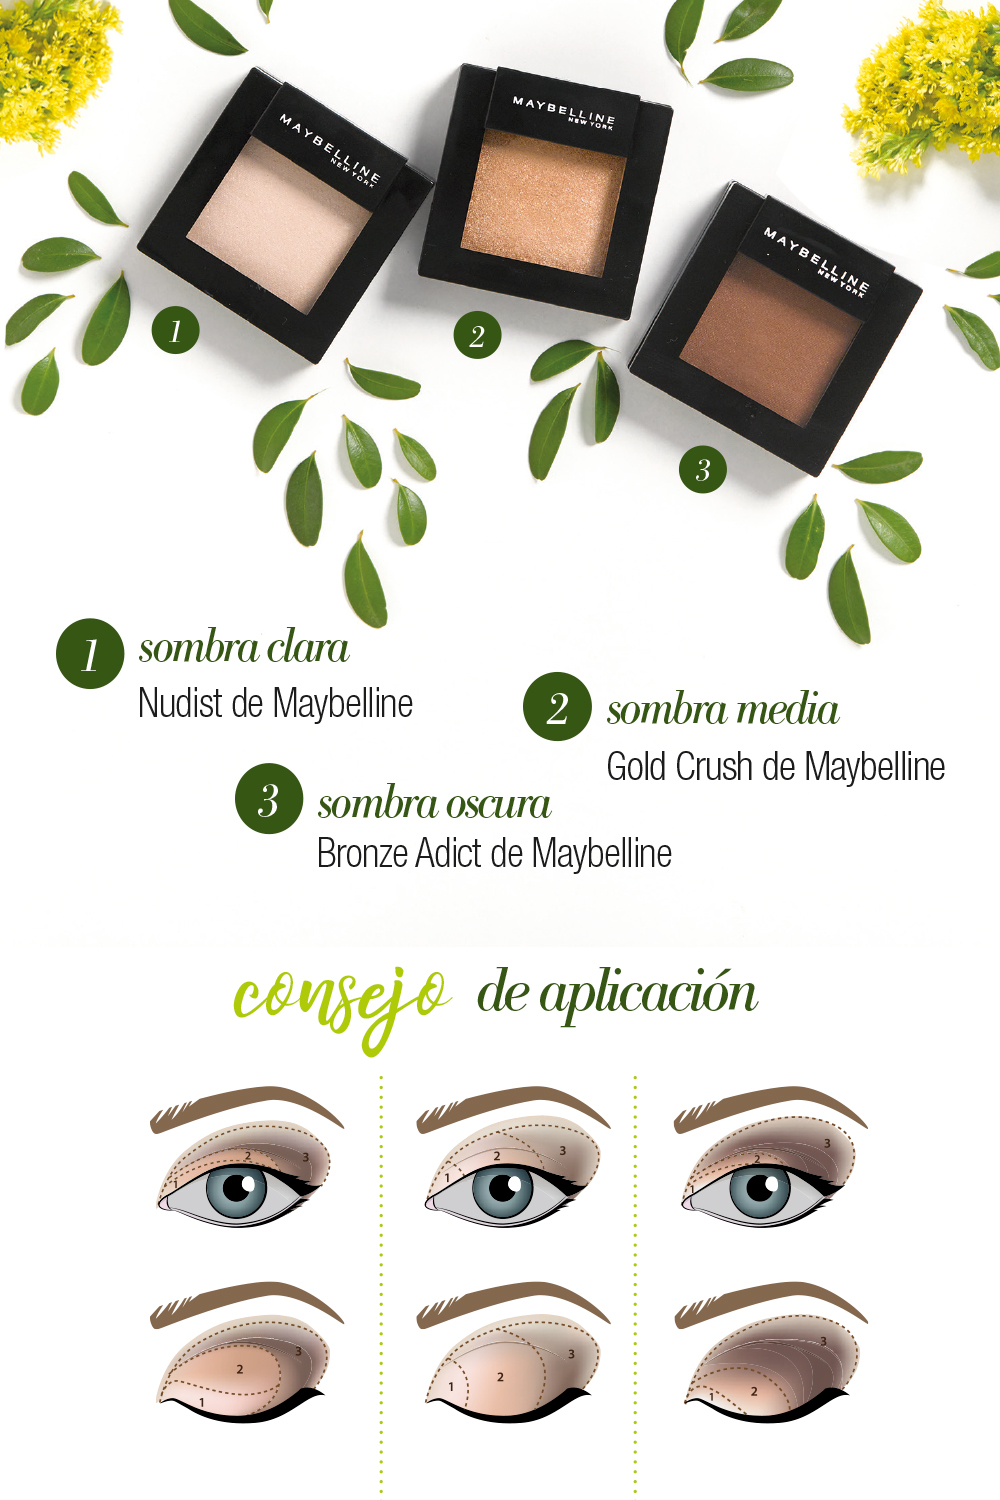 Maquillaje para ojos marrones: tips y consejos - Cuidarnos | Consum